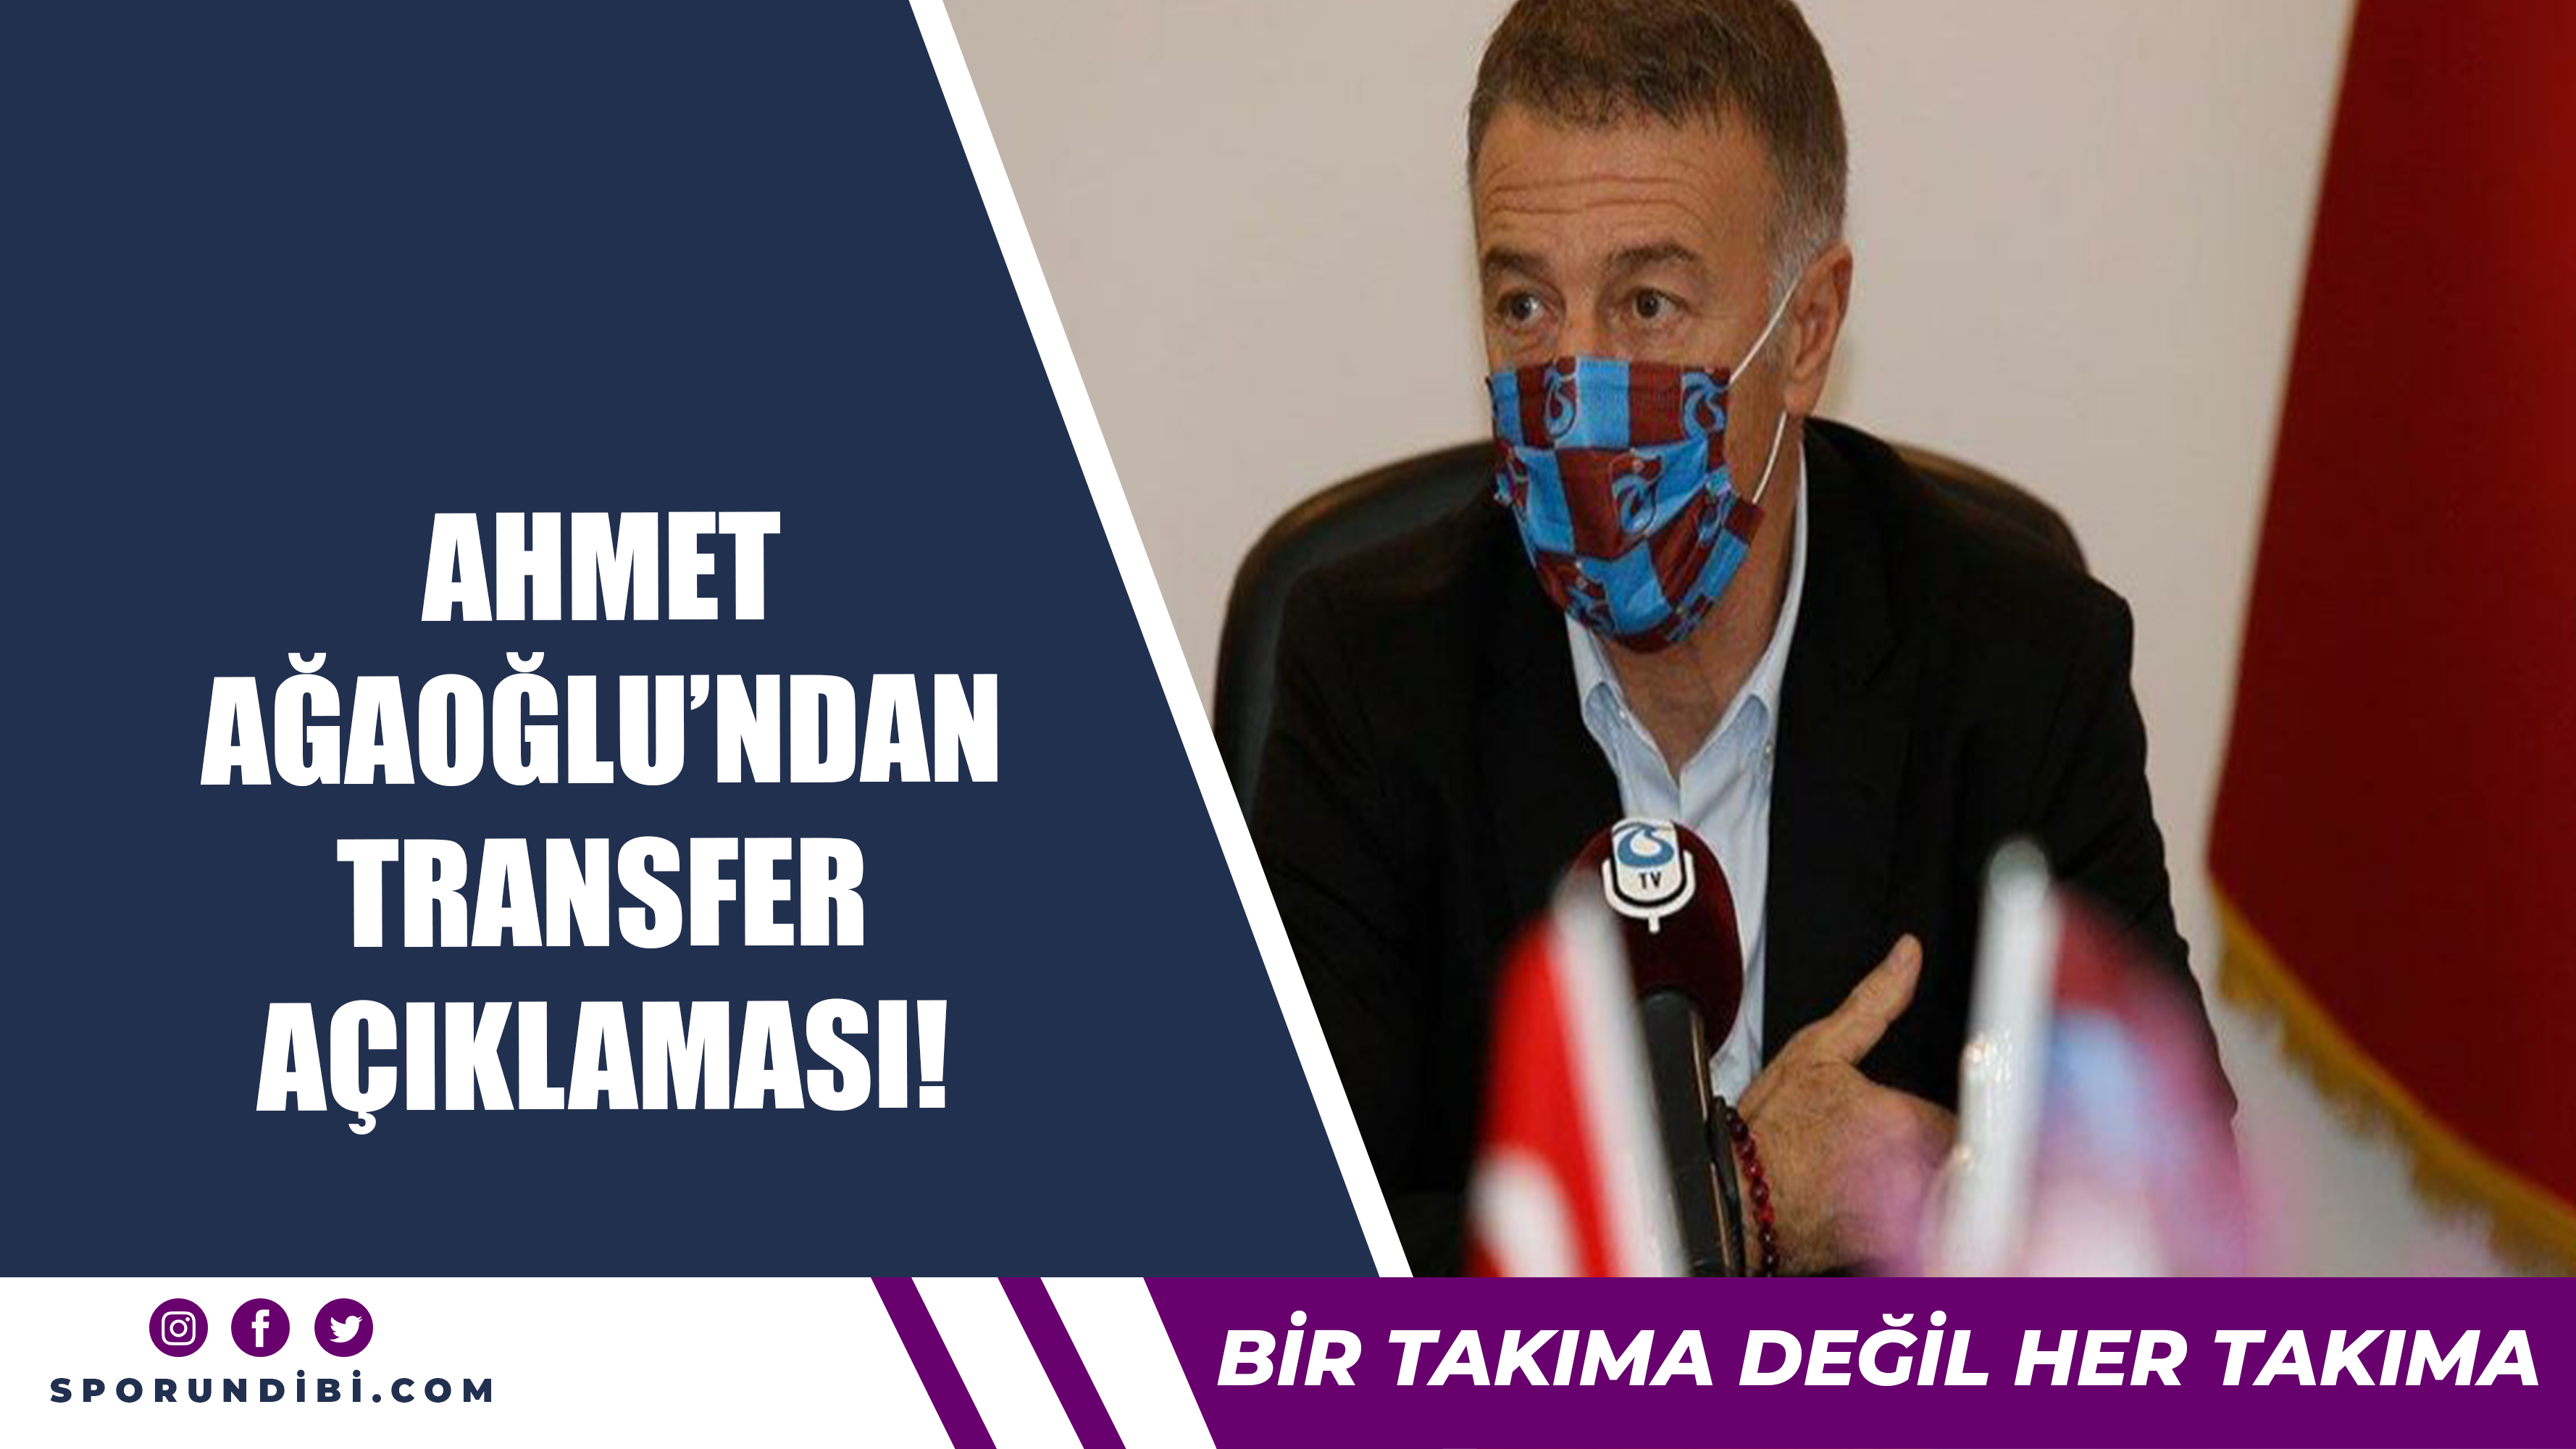 Ahmet Ağaoğlu'ndan transfer açıklaması!